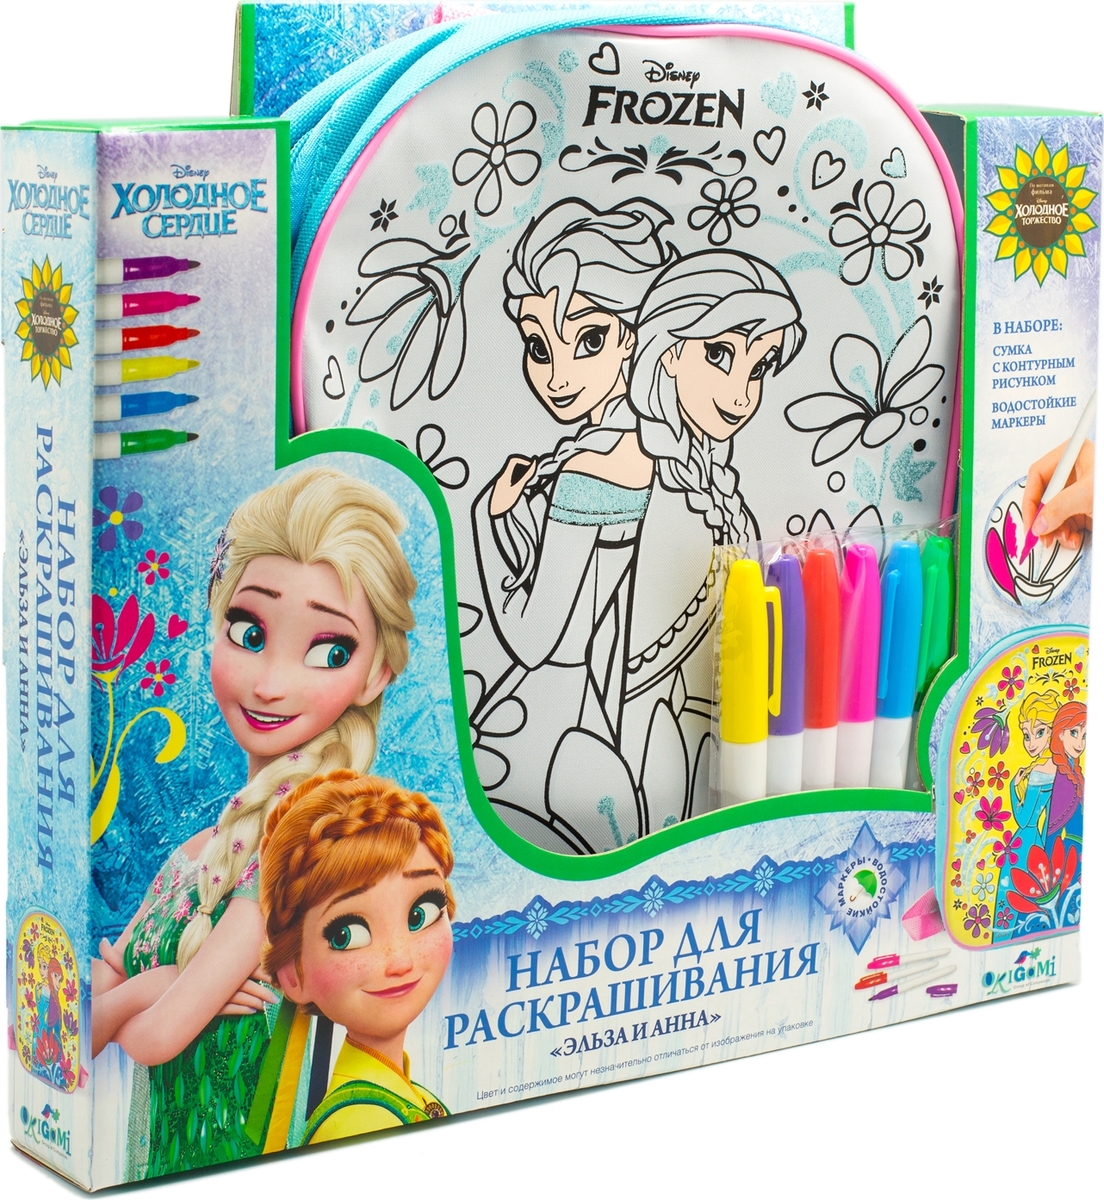 Disney Frozen Сумка-рюкзак для раскрашивания Эльза и Анна